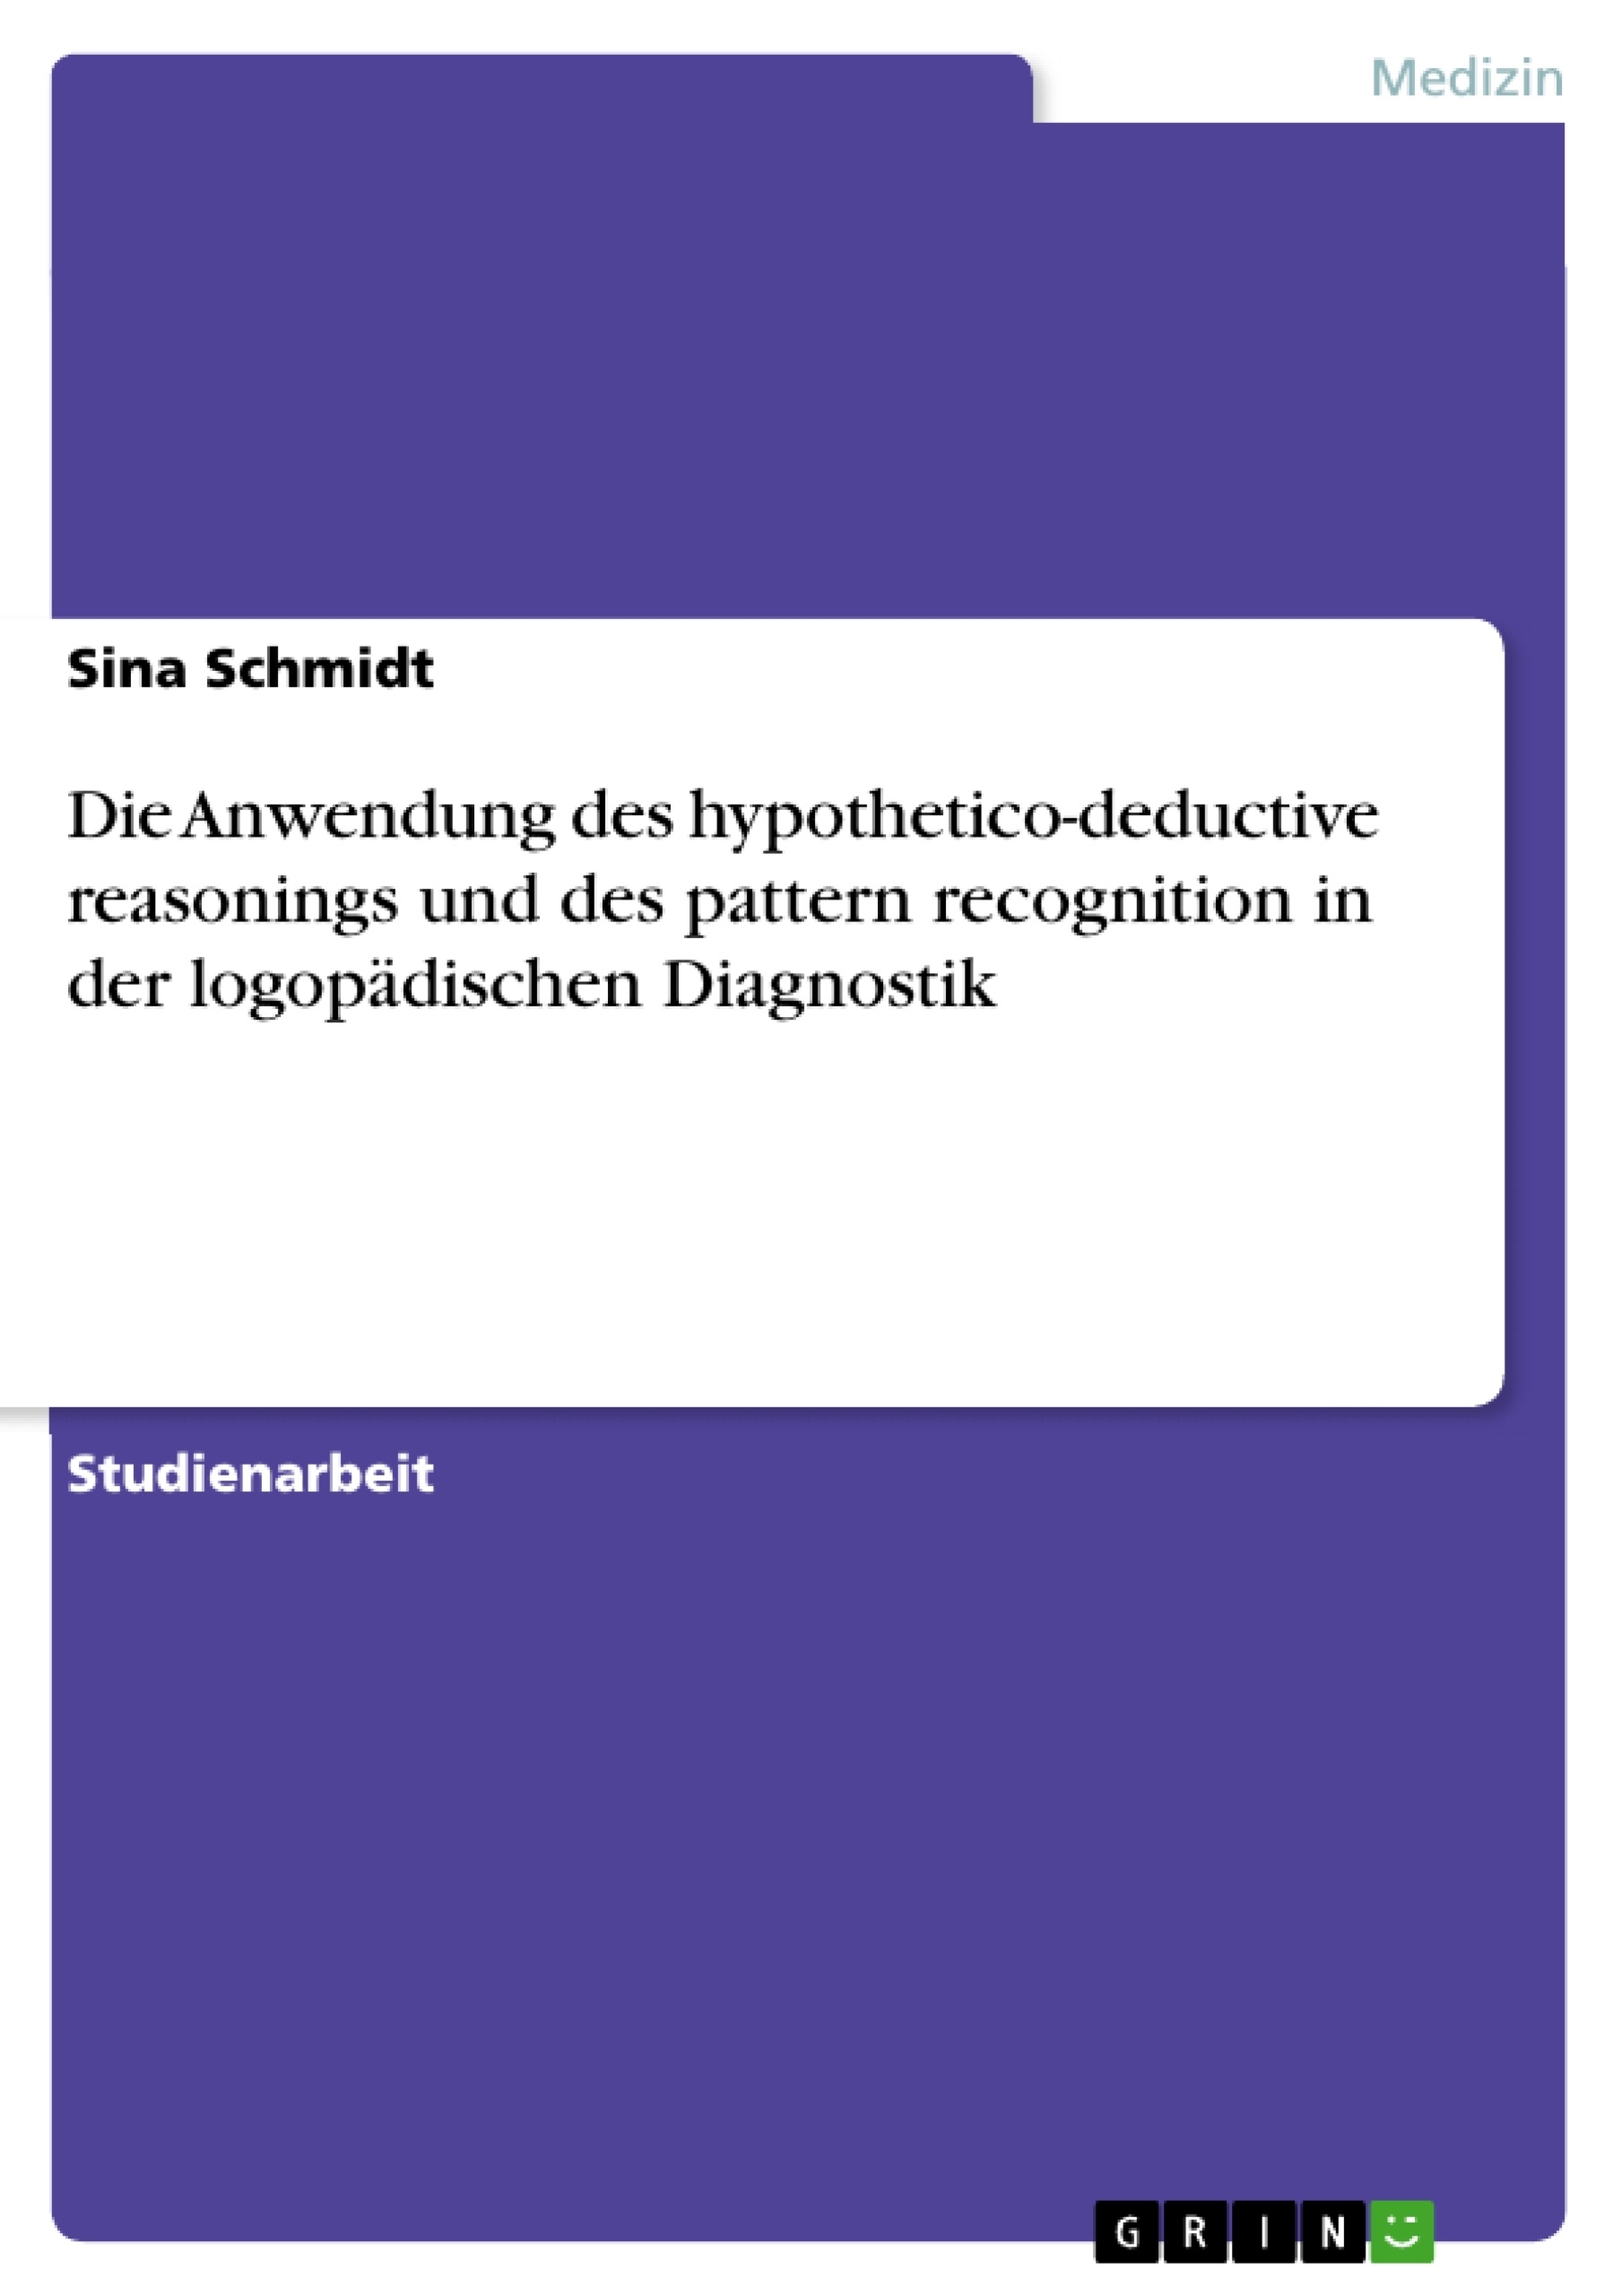 Título: Die Anwendung des hypothetico-deductive reasonings und des pattern recognition in der logopädischen Diagnostik